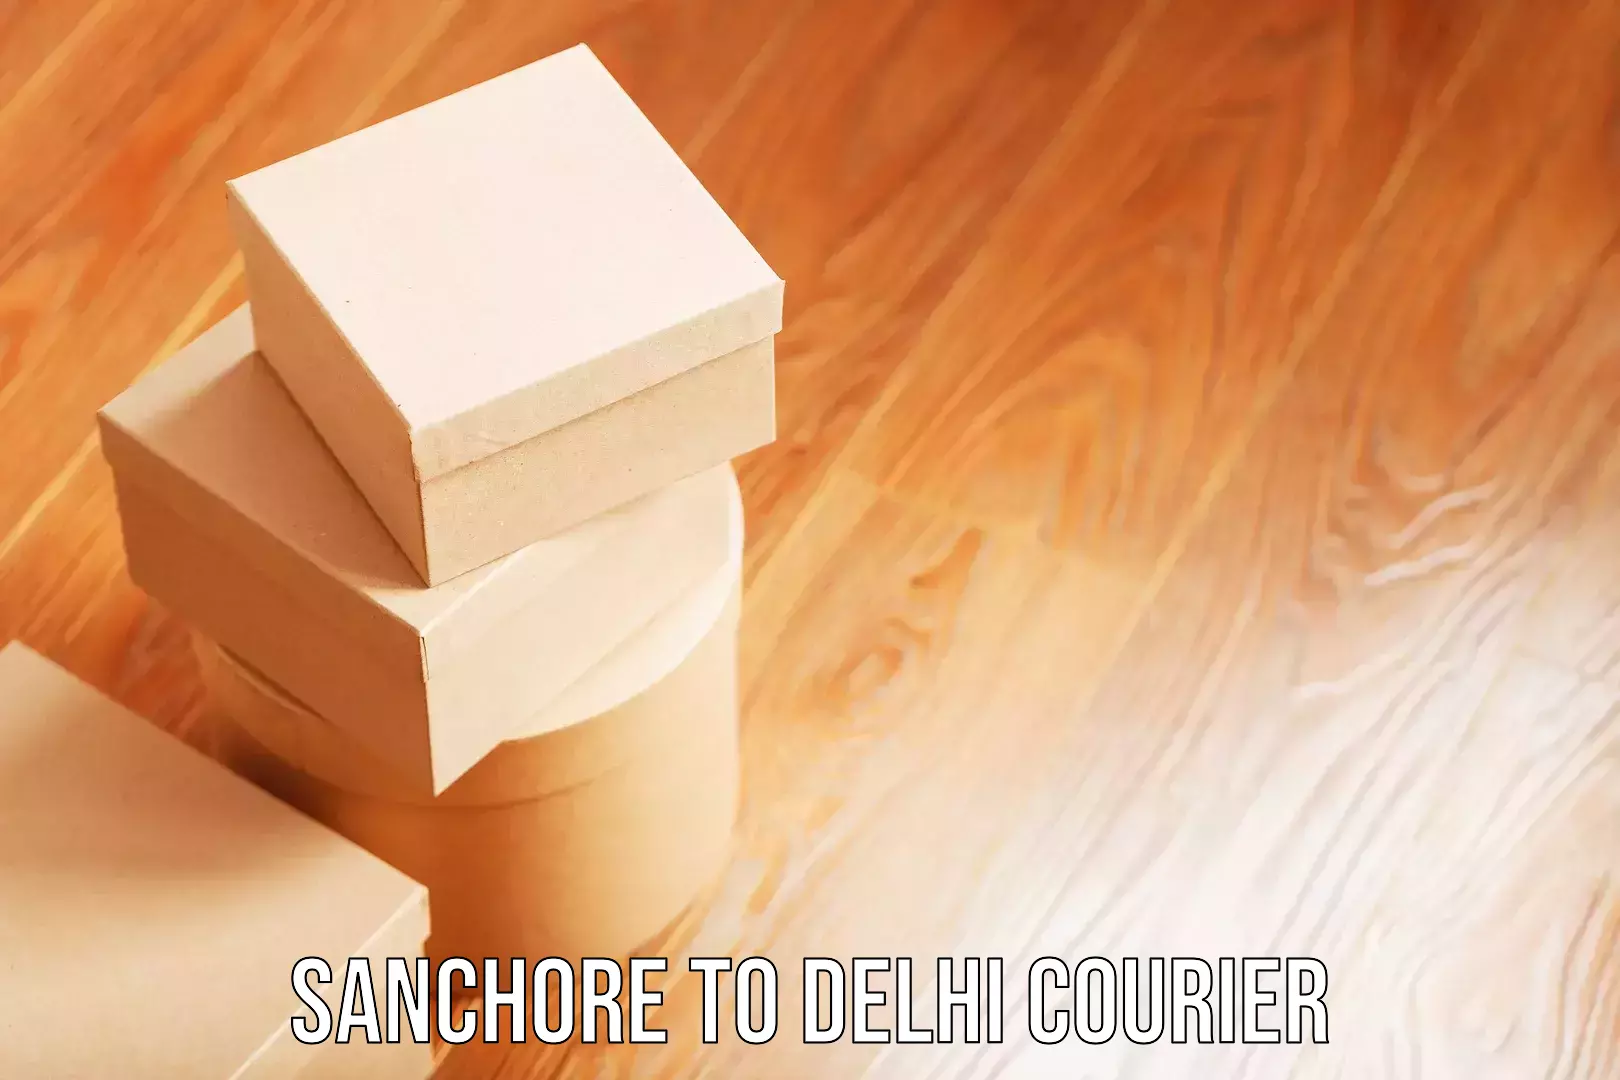 Luggage delivery app Sanchore to Delhi